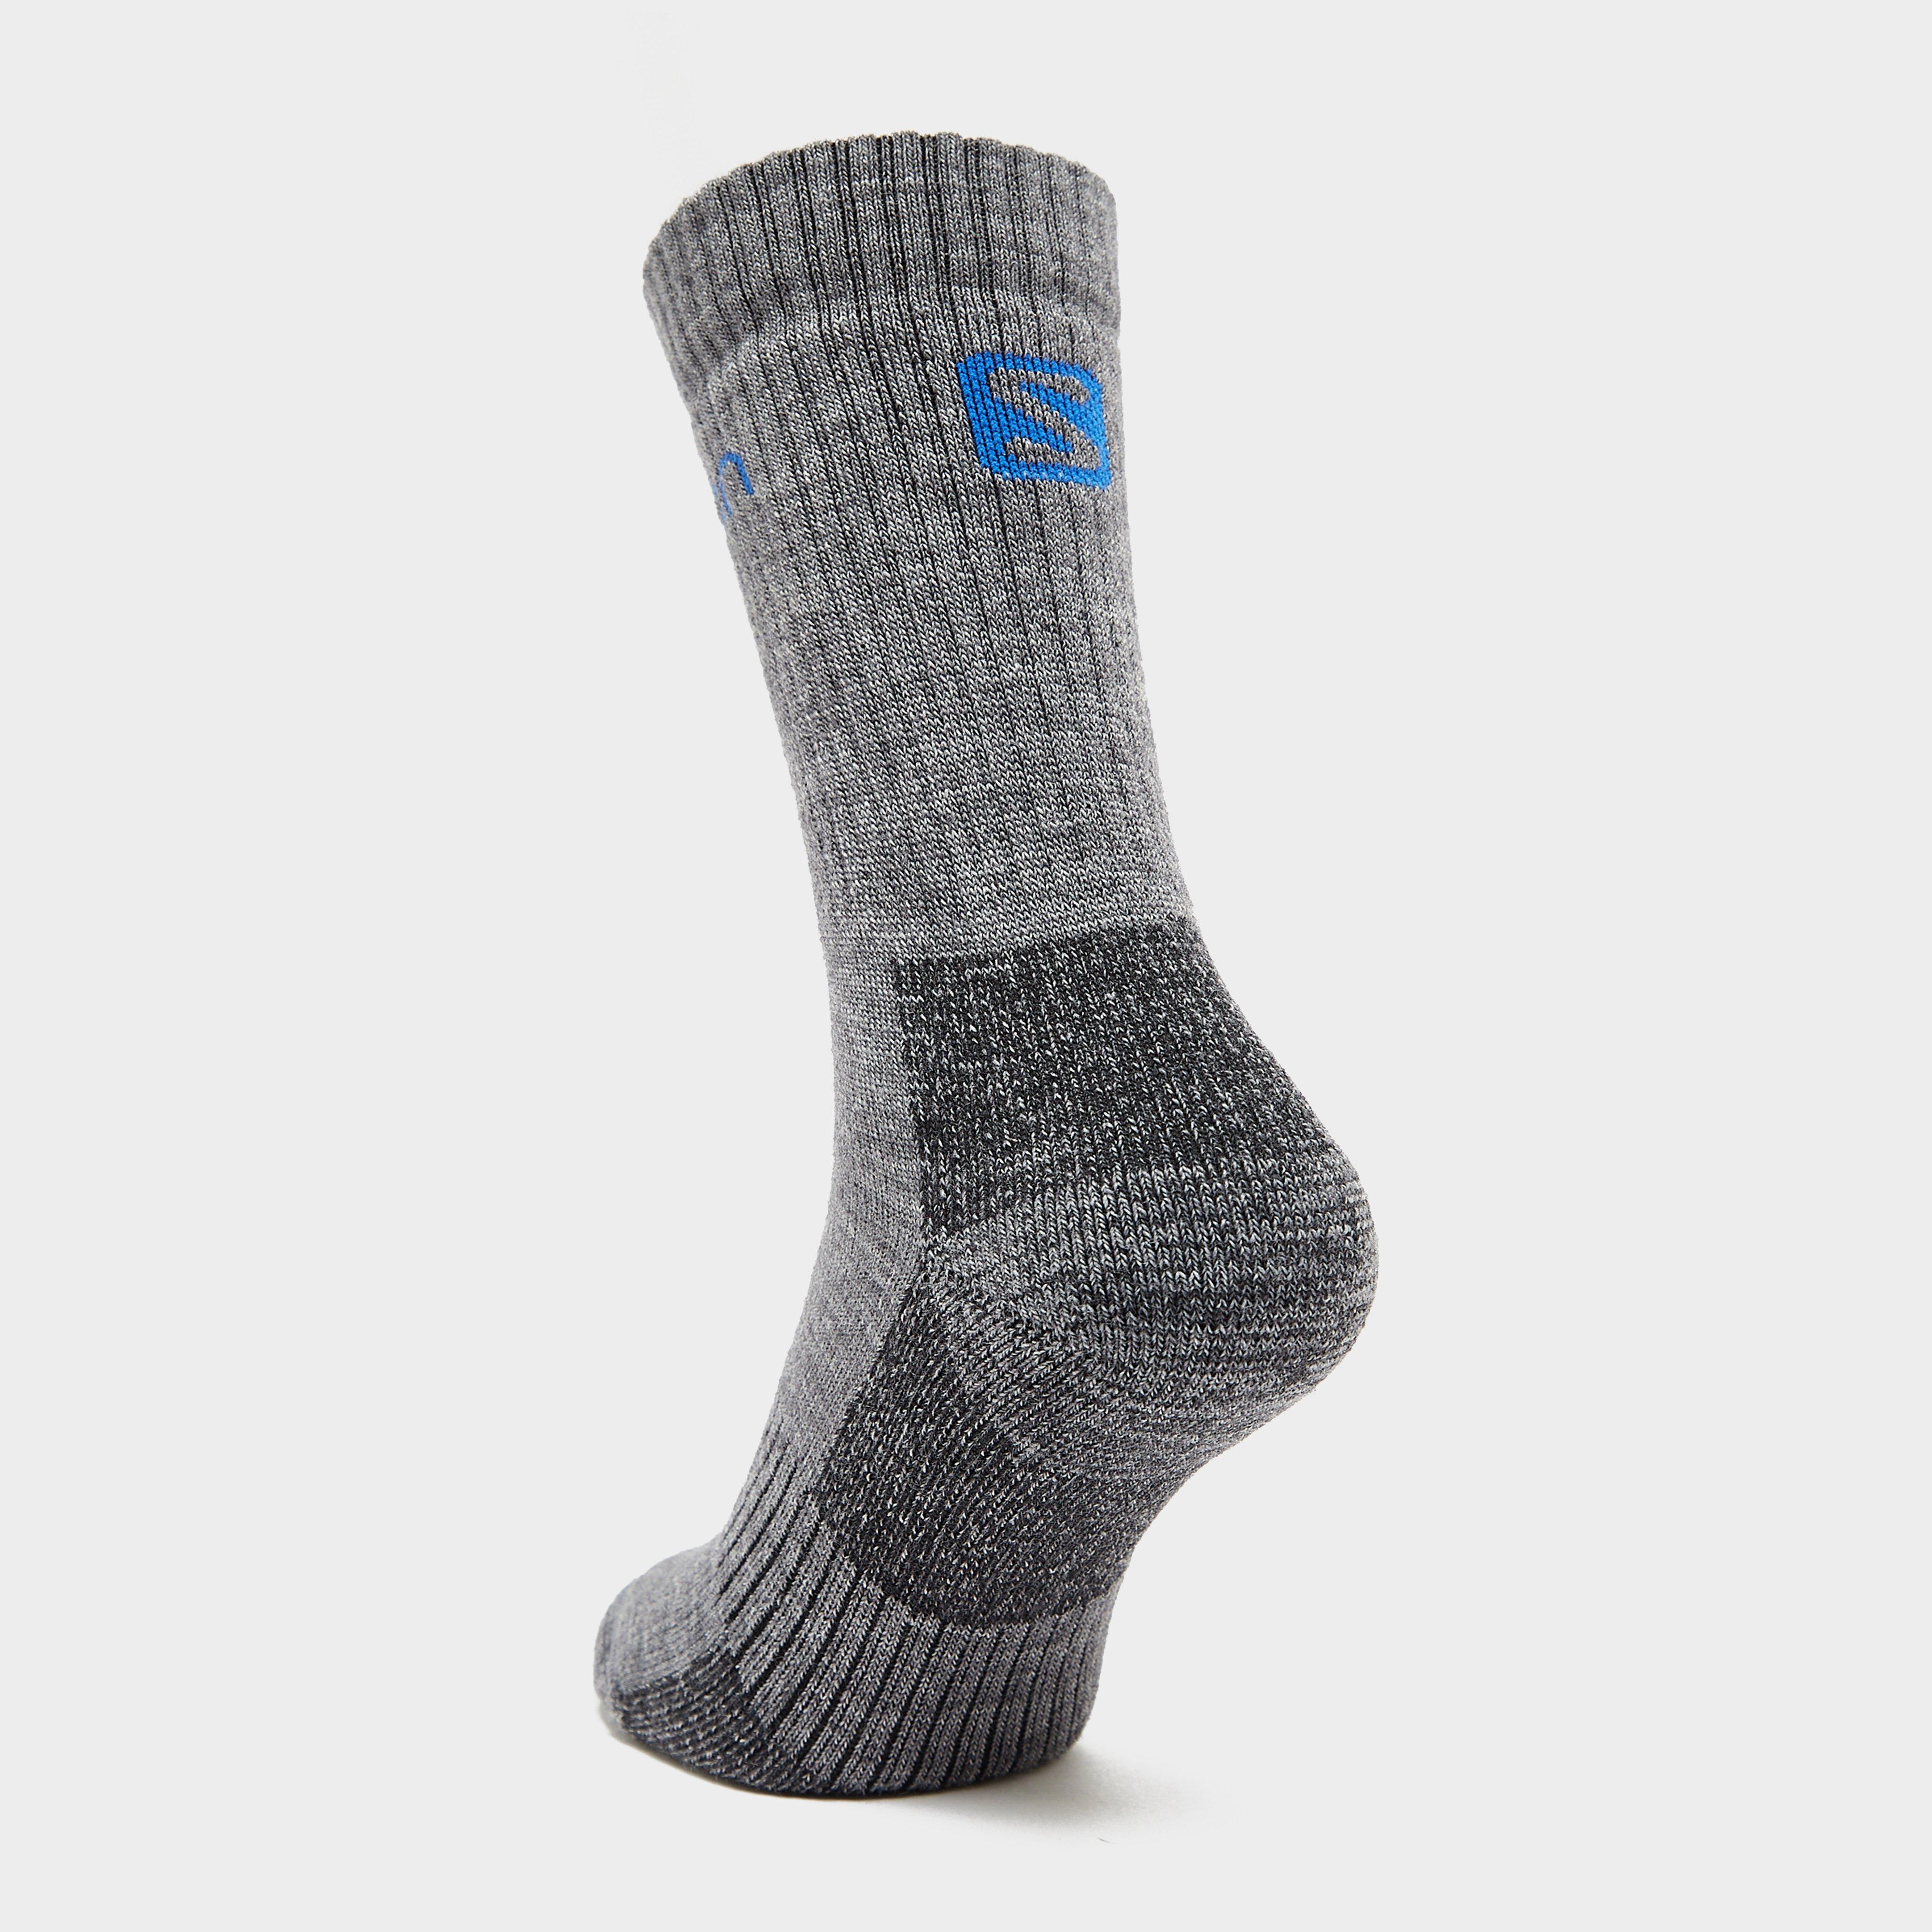 Salomon Men's 2 Pack Merino Socks Review